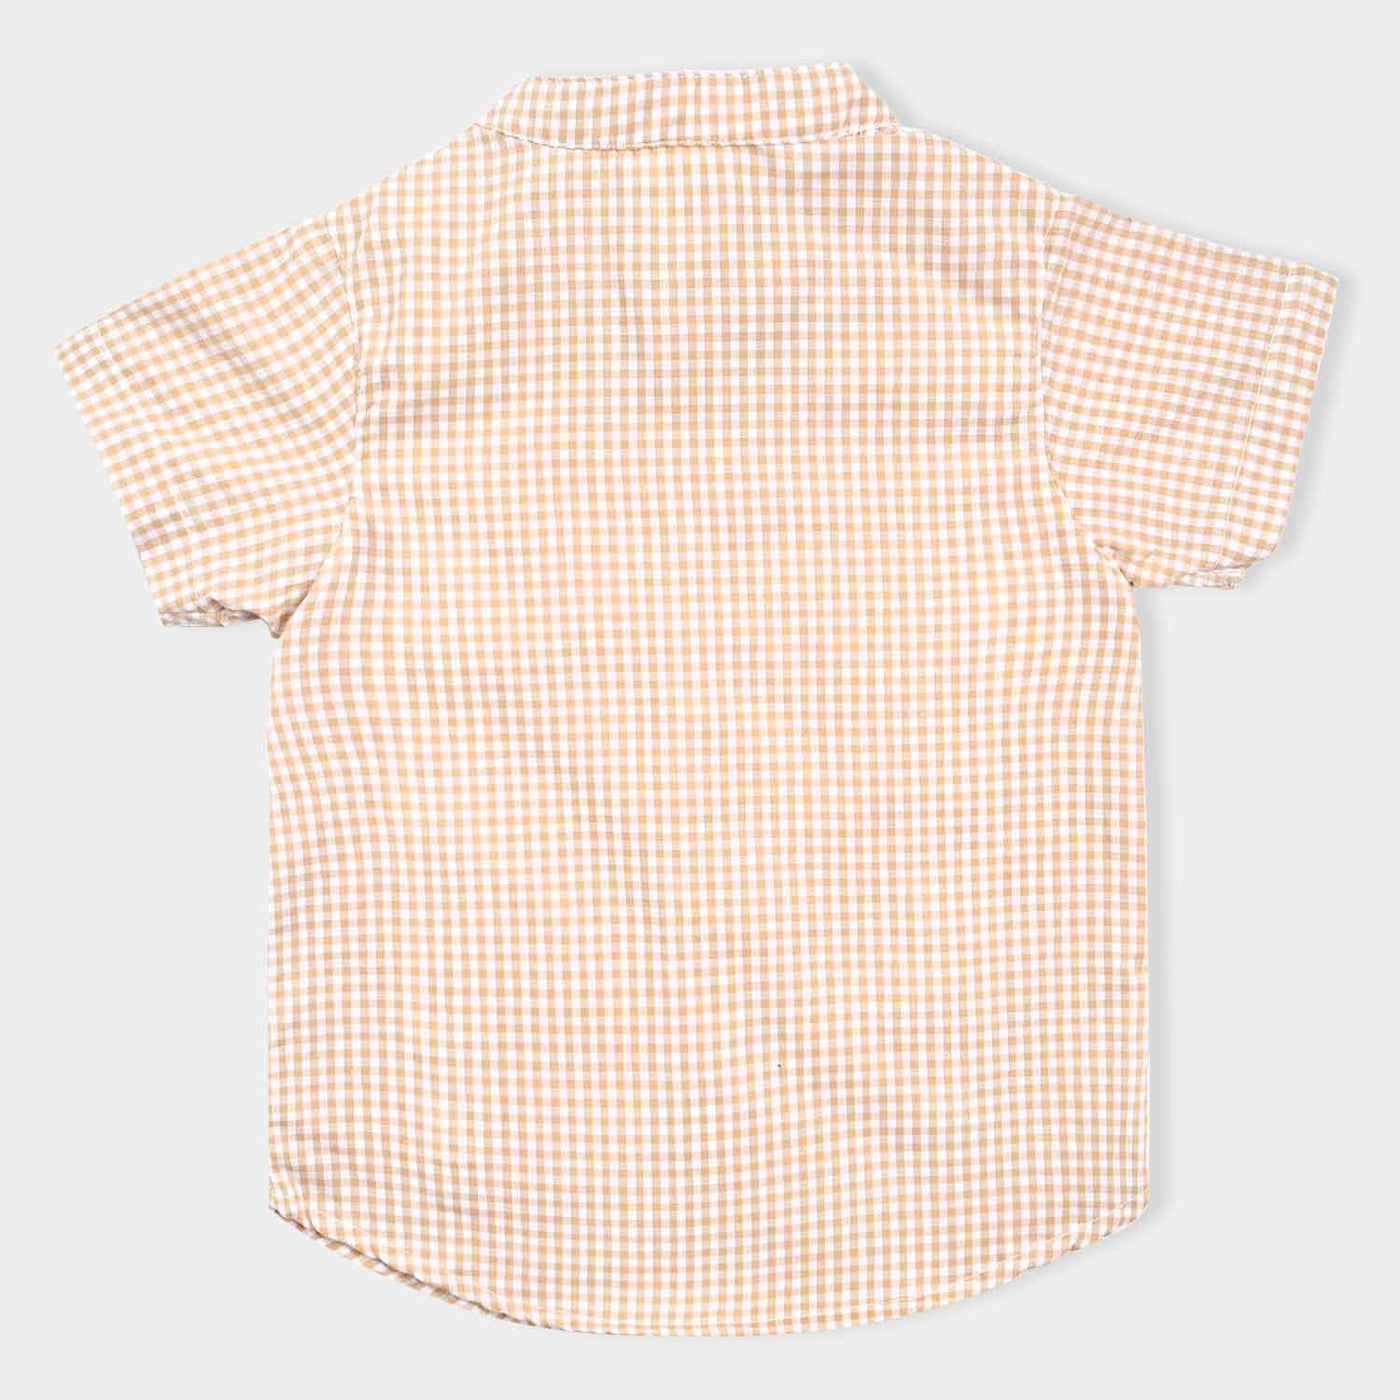 Infant Boys Cotton Interlock Suit -L.B Check